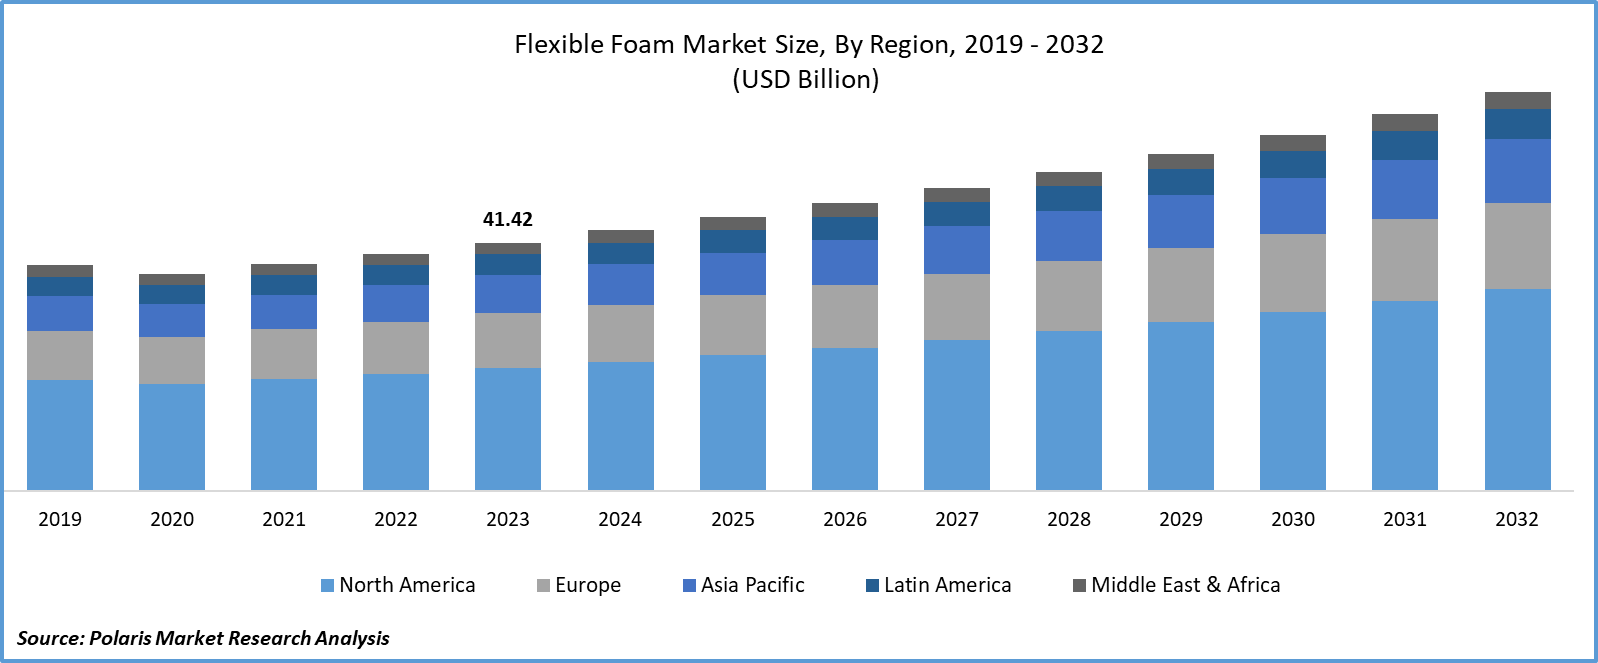 Flexible Foam Market Size